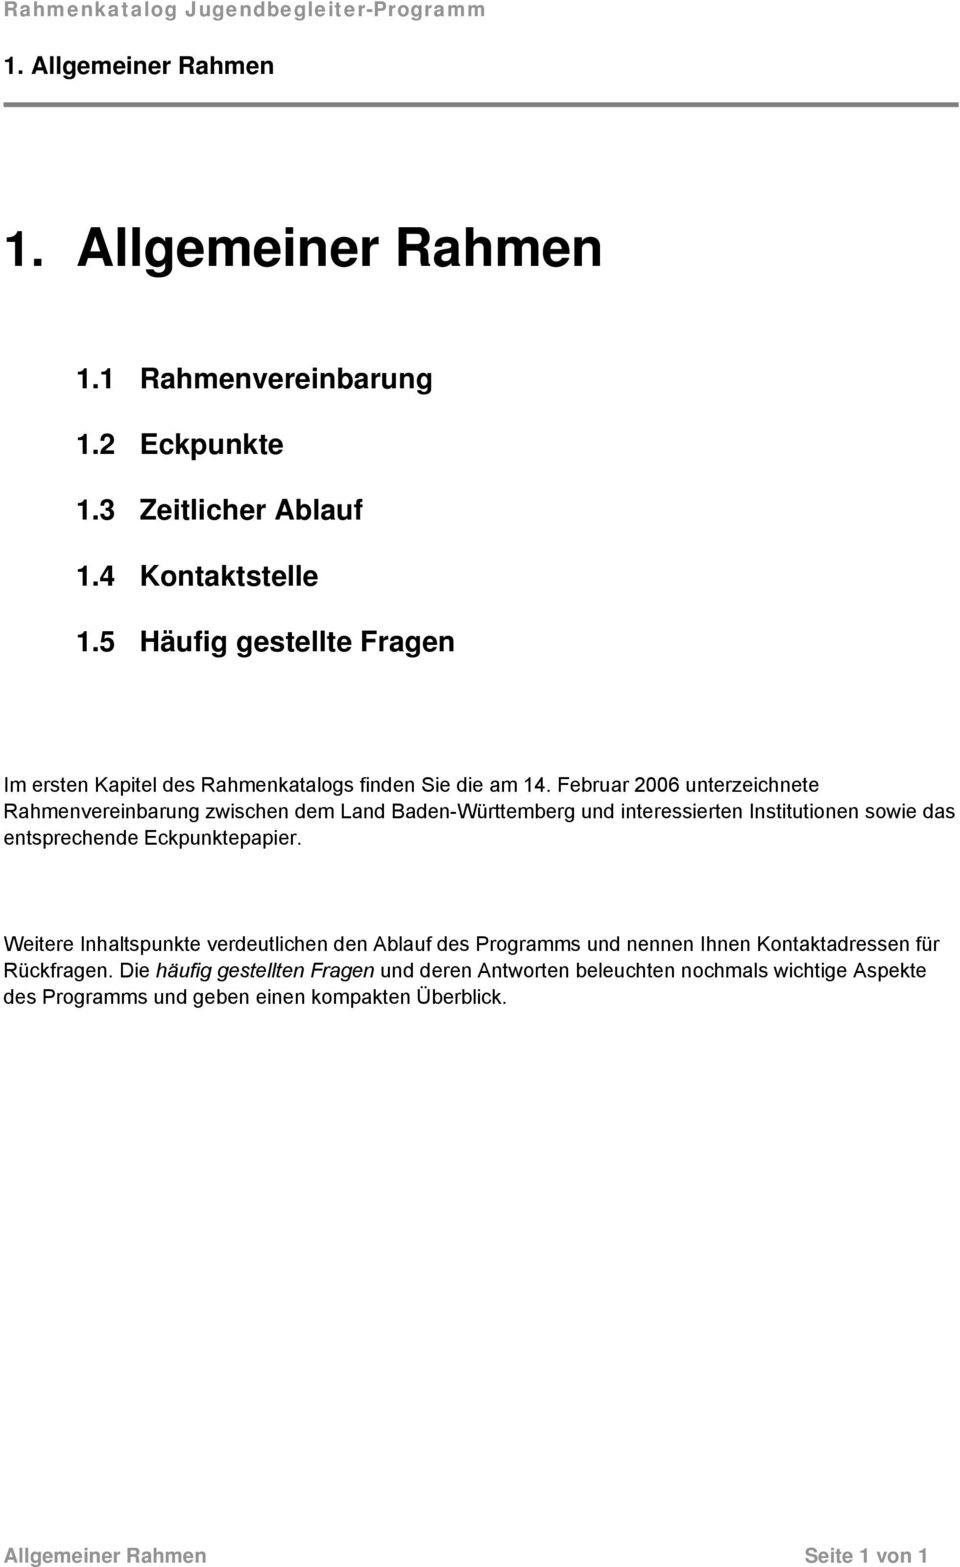 Februar 2006 unterzeichnete Rahmenvereinbarung zwischen dem Land Baden-Württemberg und interessierten Institutionen sowie das entsprechende Eckpunktepapier.